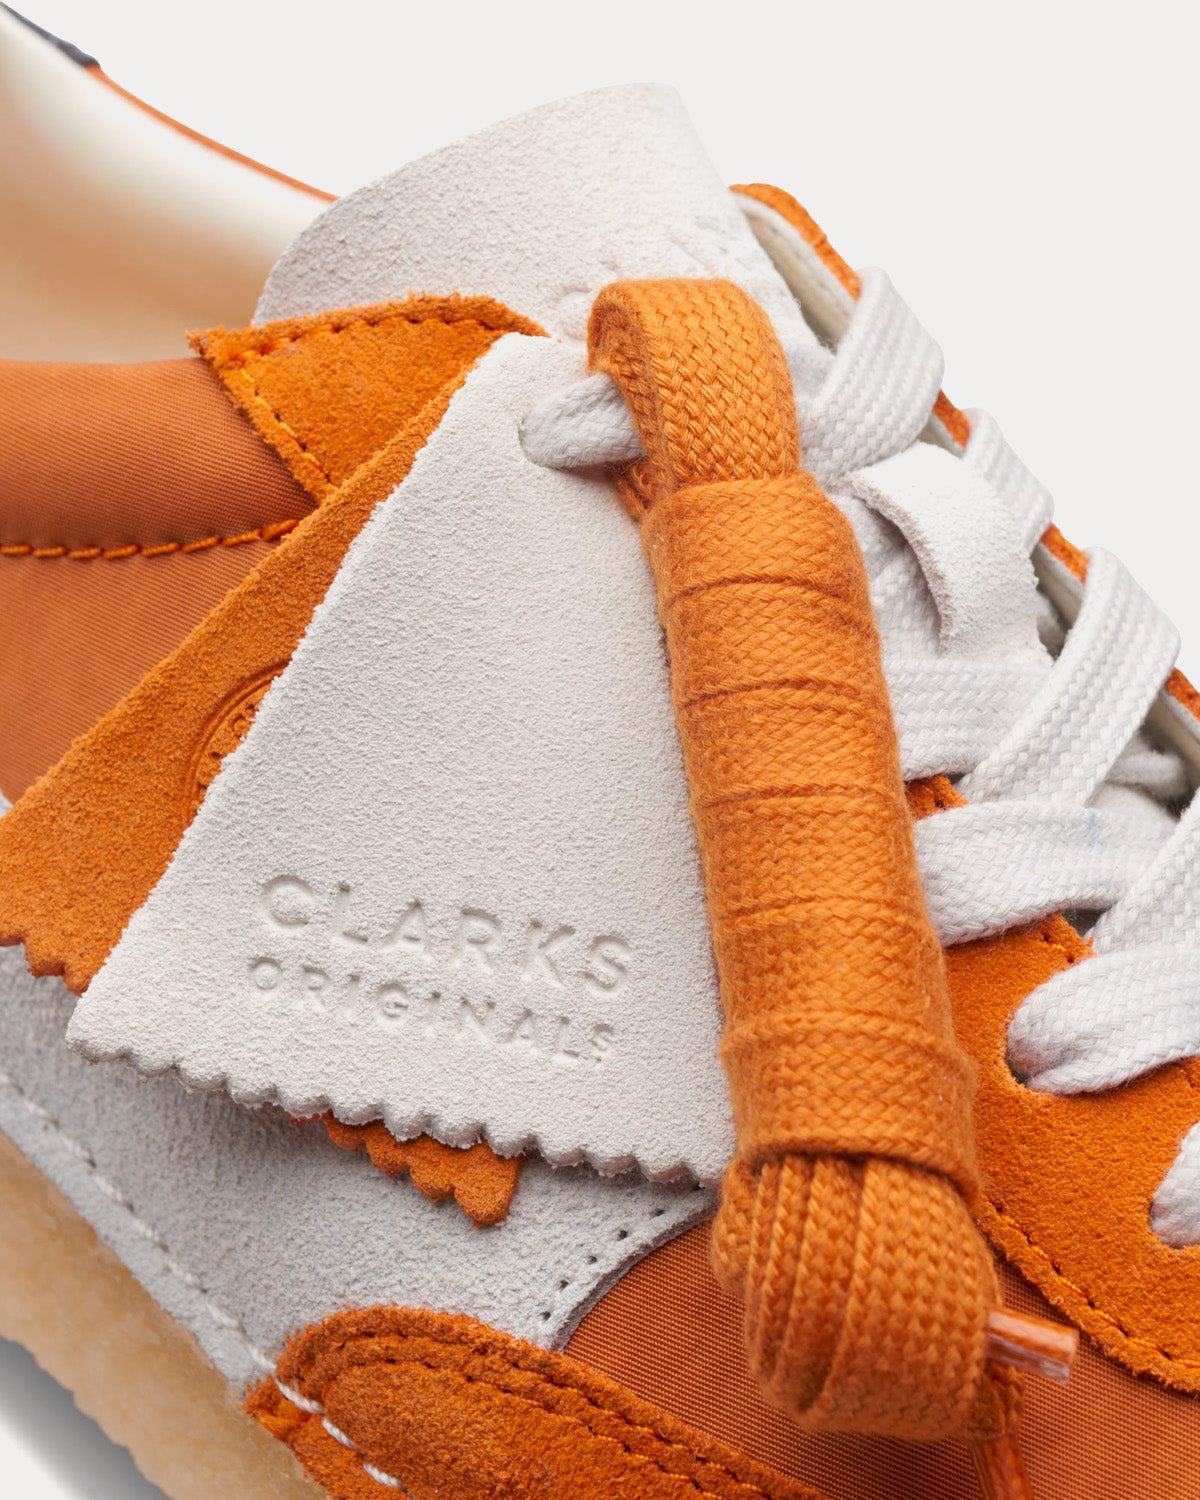 Clarks - Natalie Run Orange Combination Low Top Sneakers